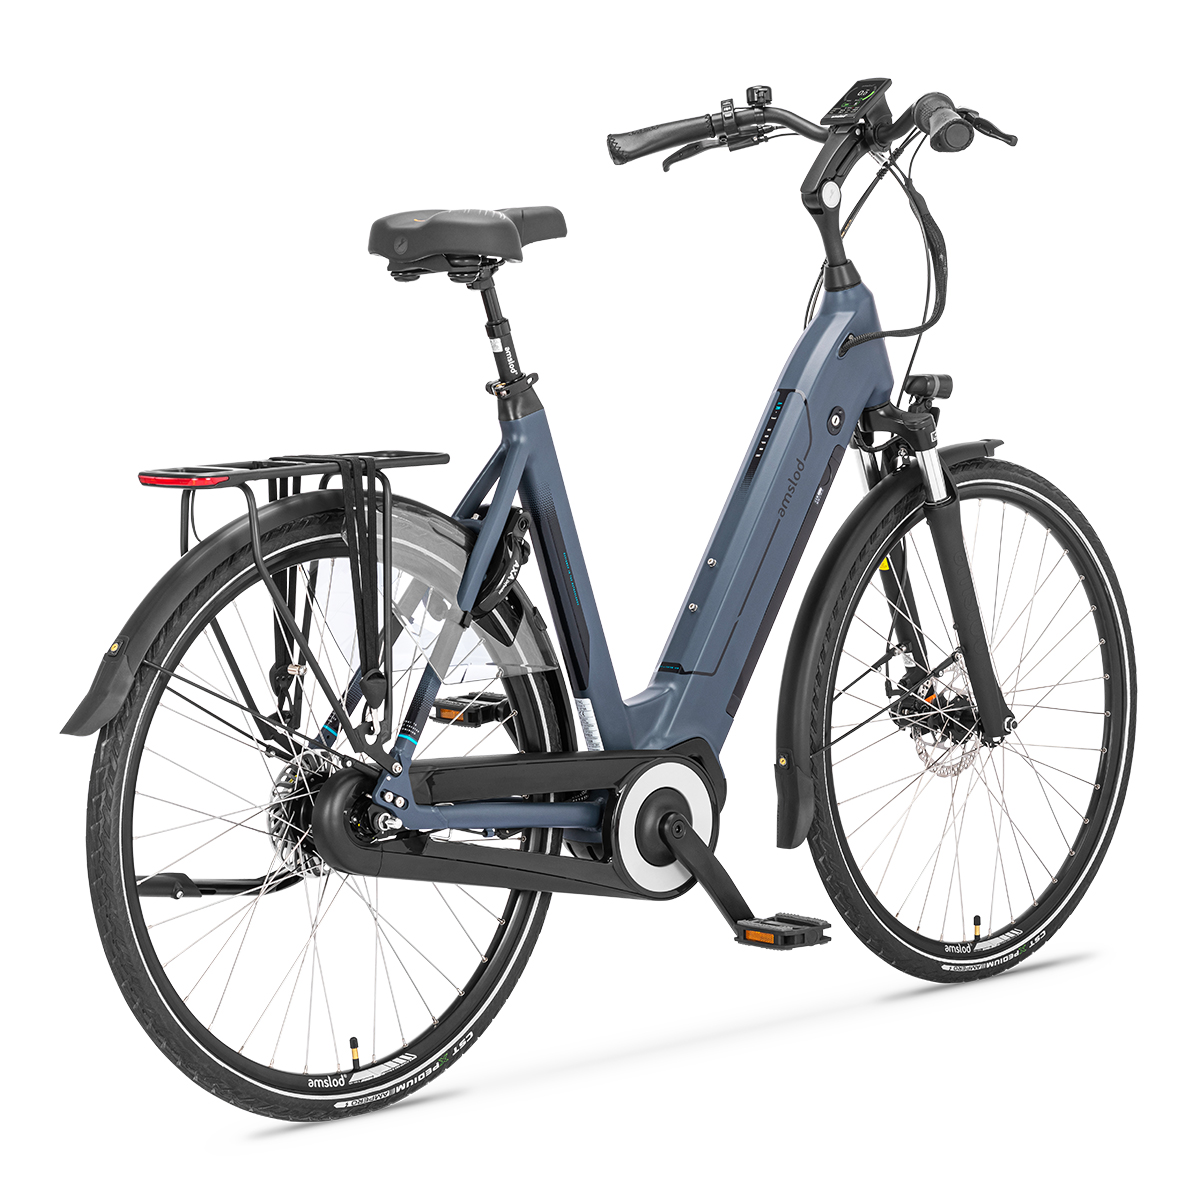 Afbeelding Amslod elektrische fiets active max hedon amslod fietsen 3